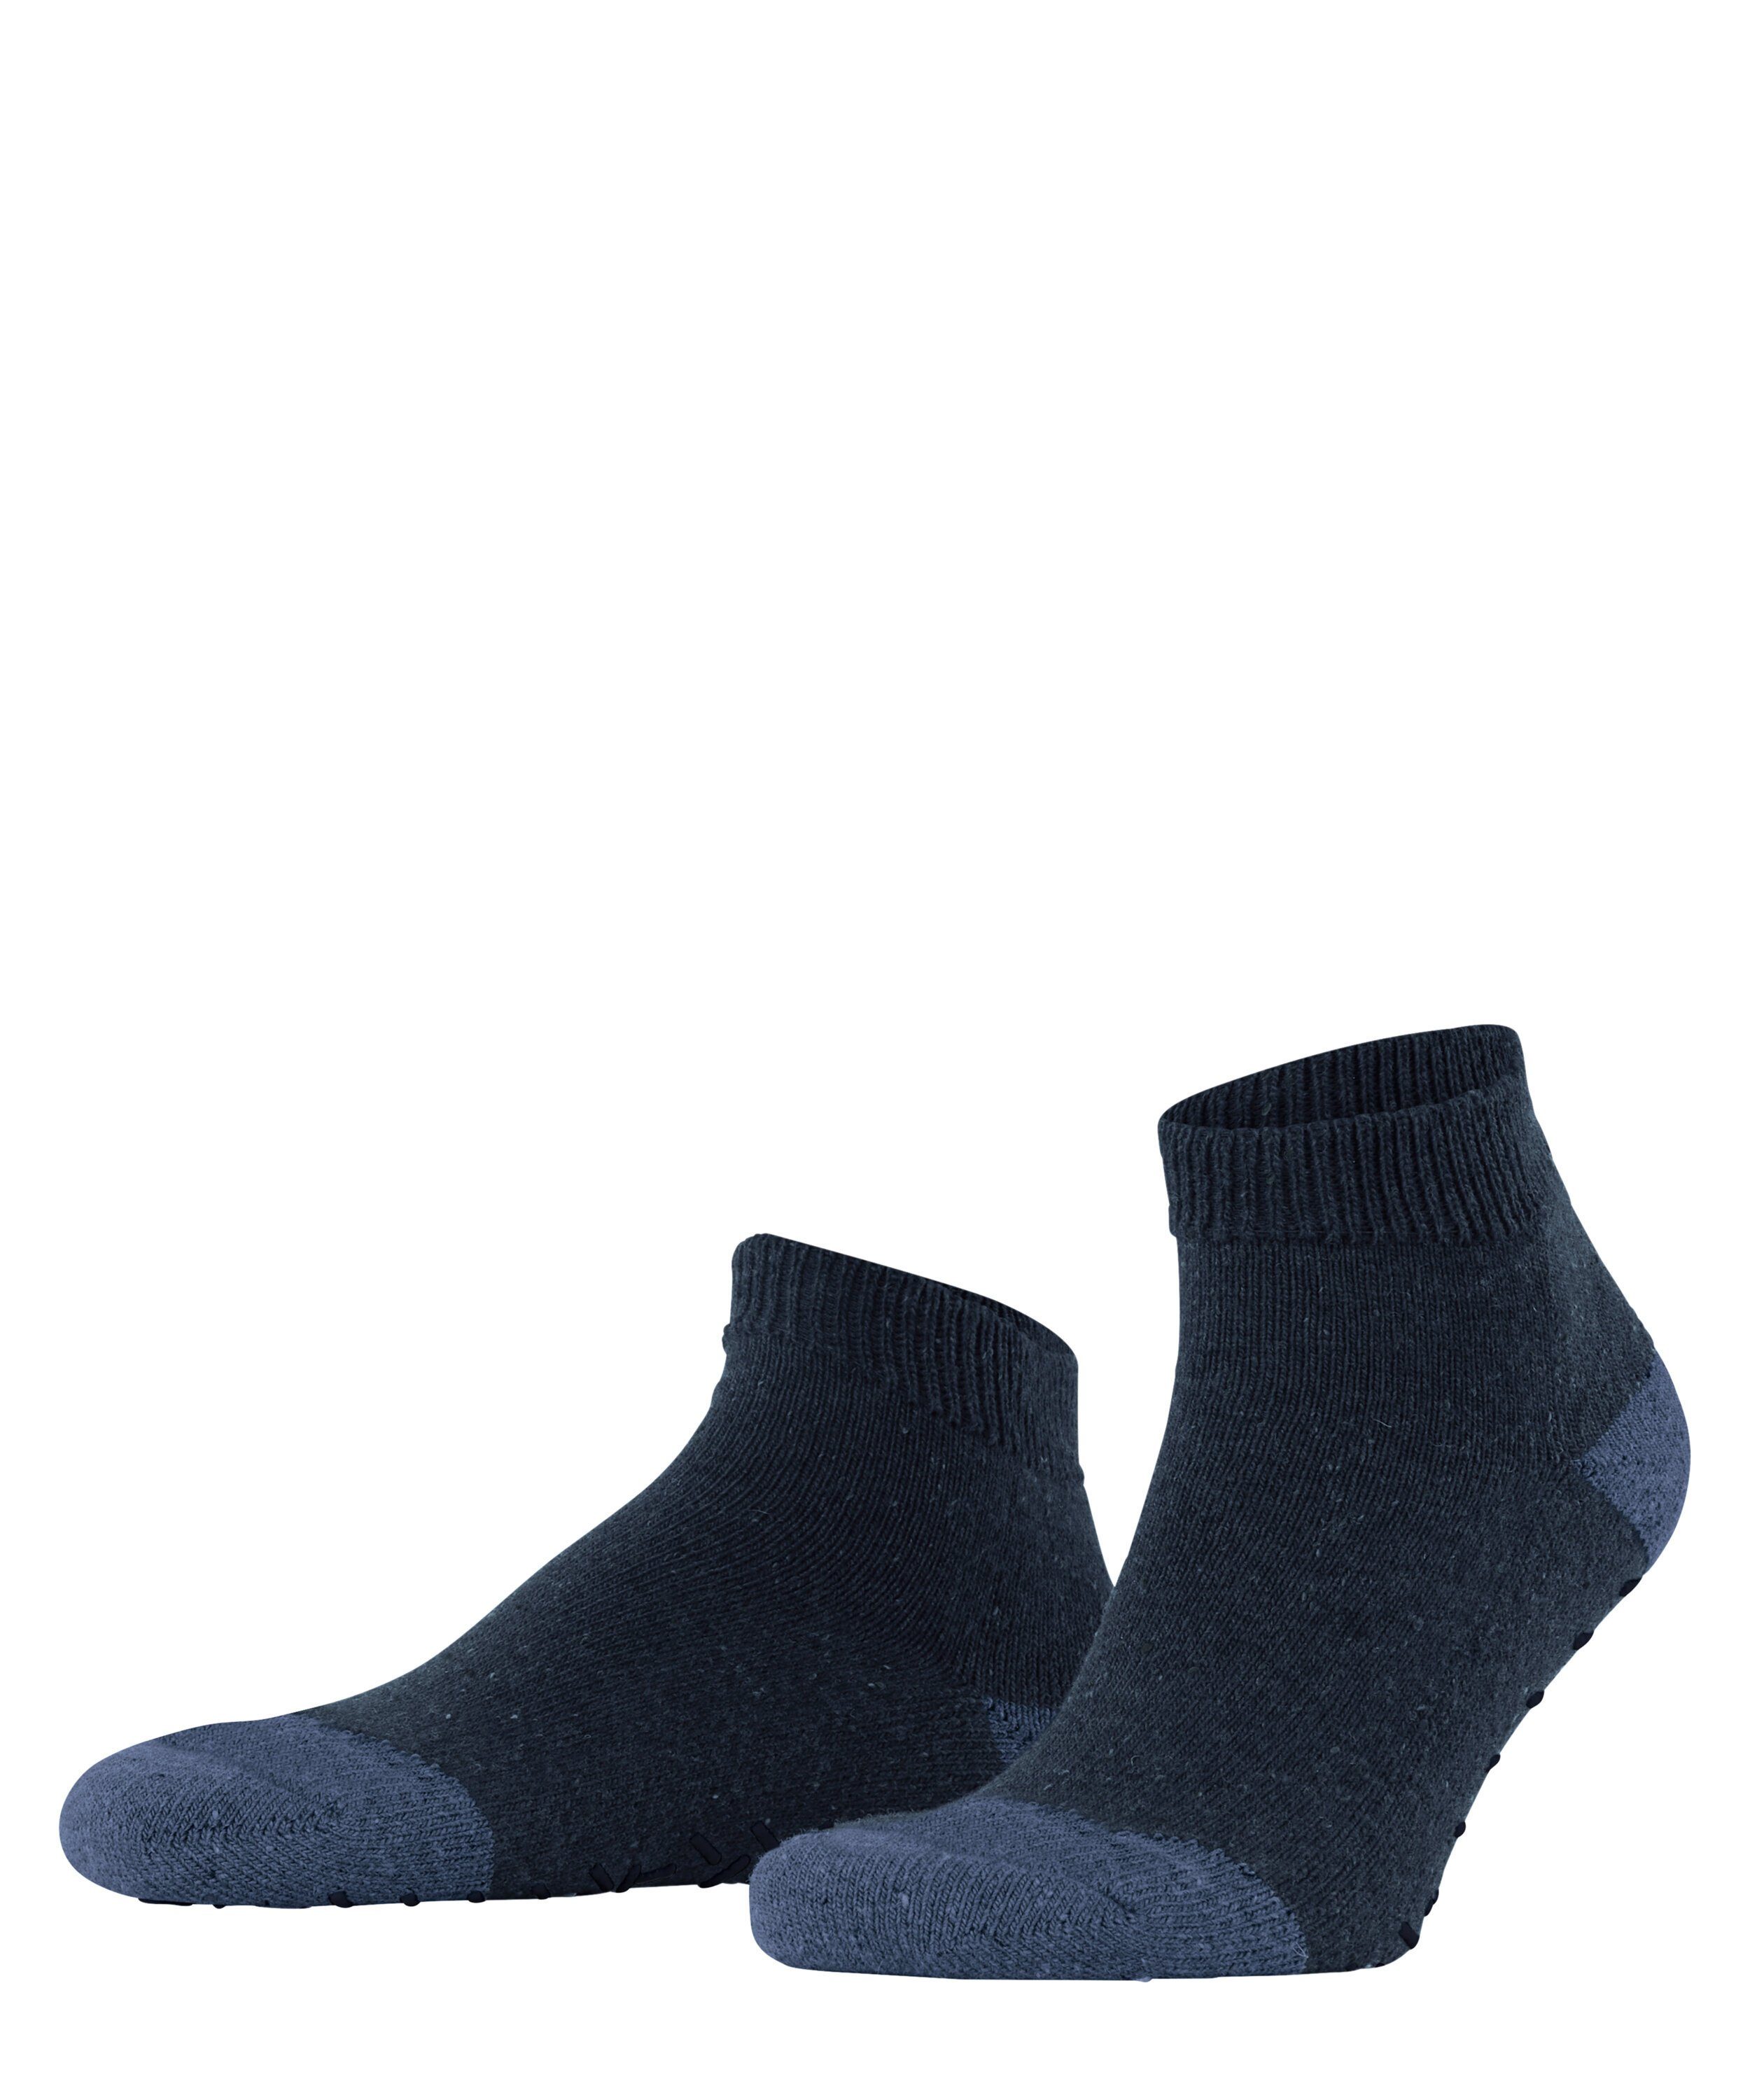 (6120) Effect (1-Paar) Socken Esprit marine